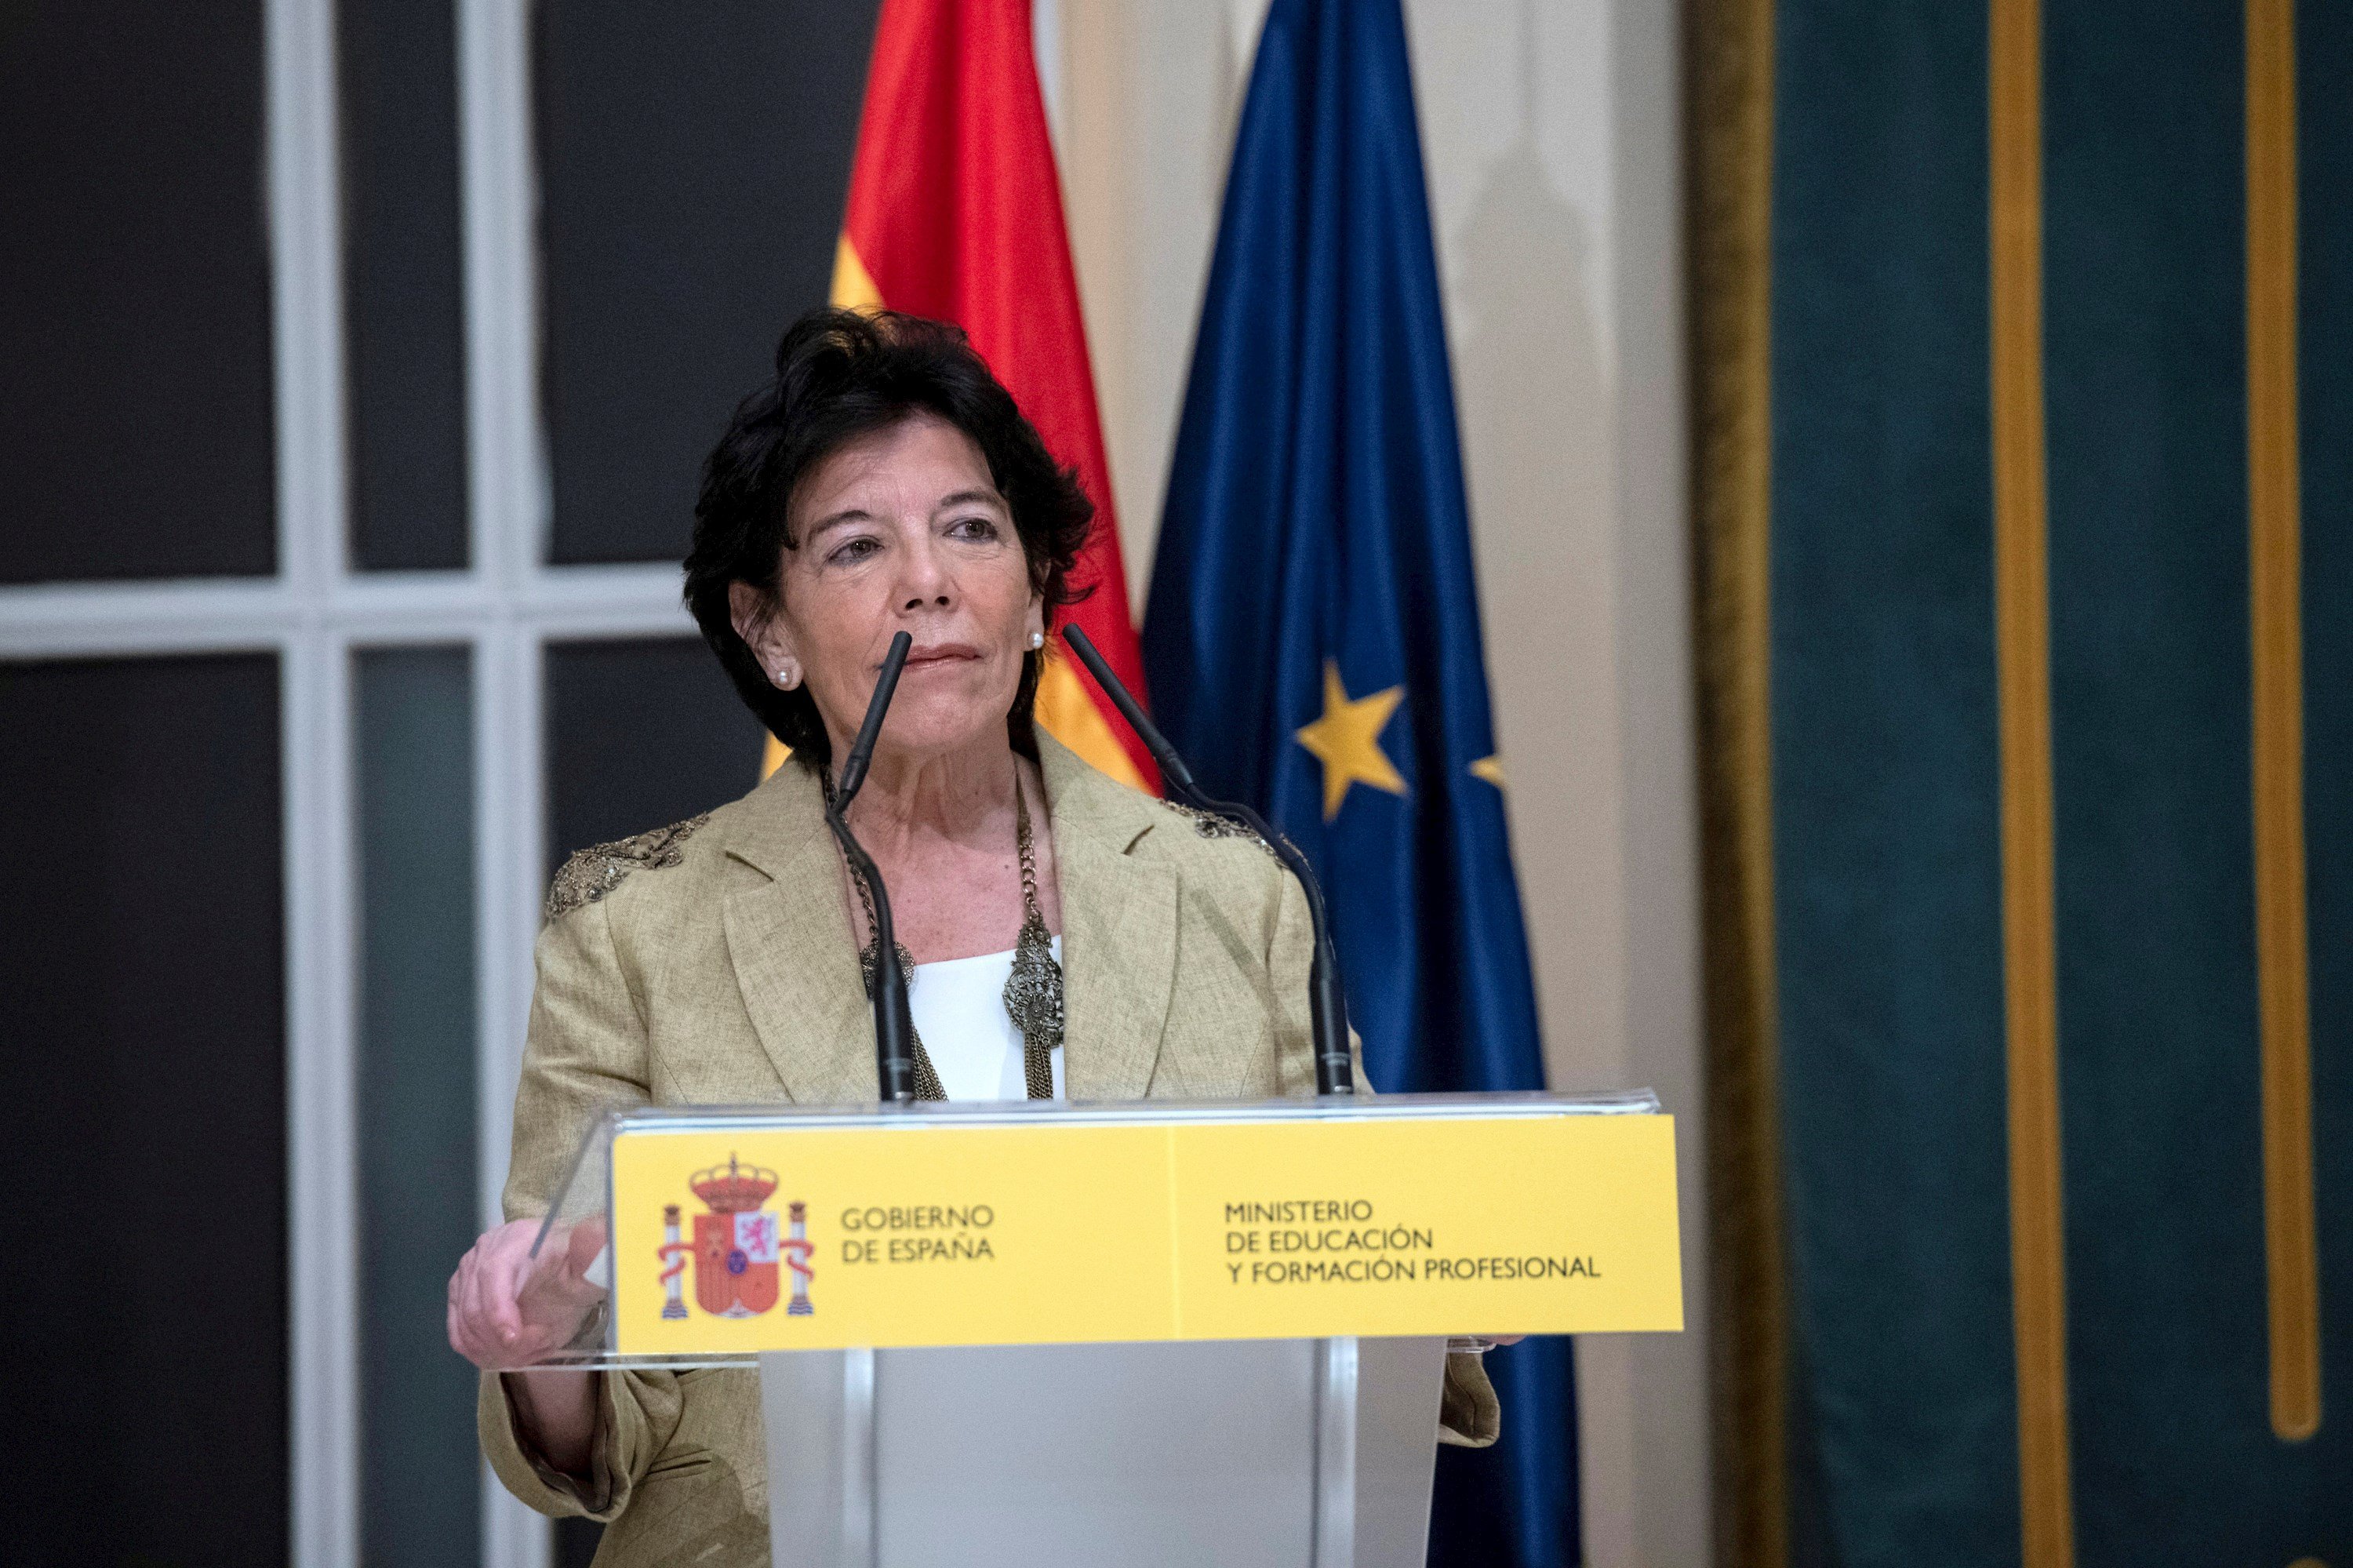 L'exministra Celaá, nova ambaixadora d'Espanya davant la Santa Seu